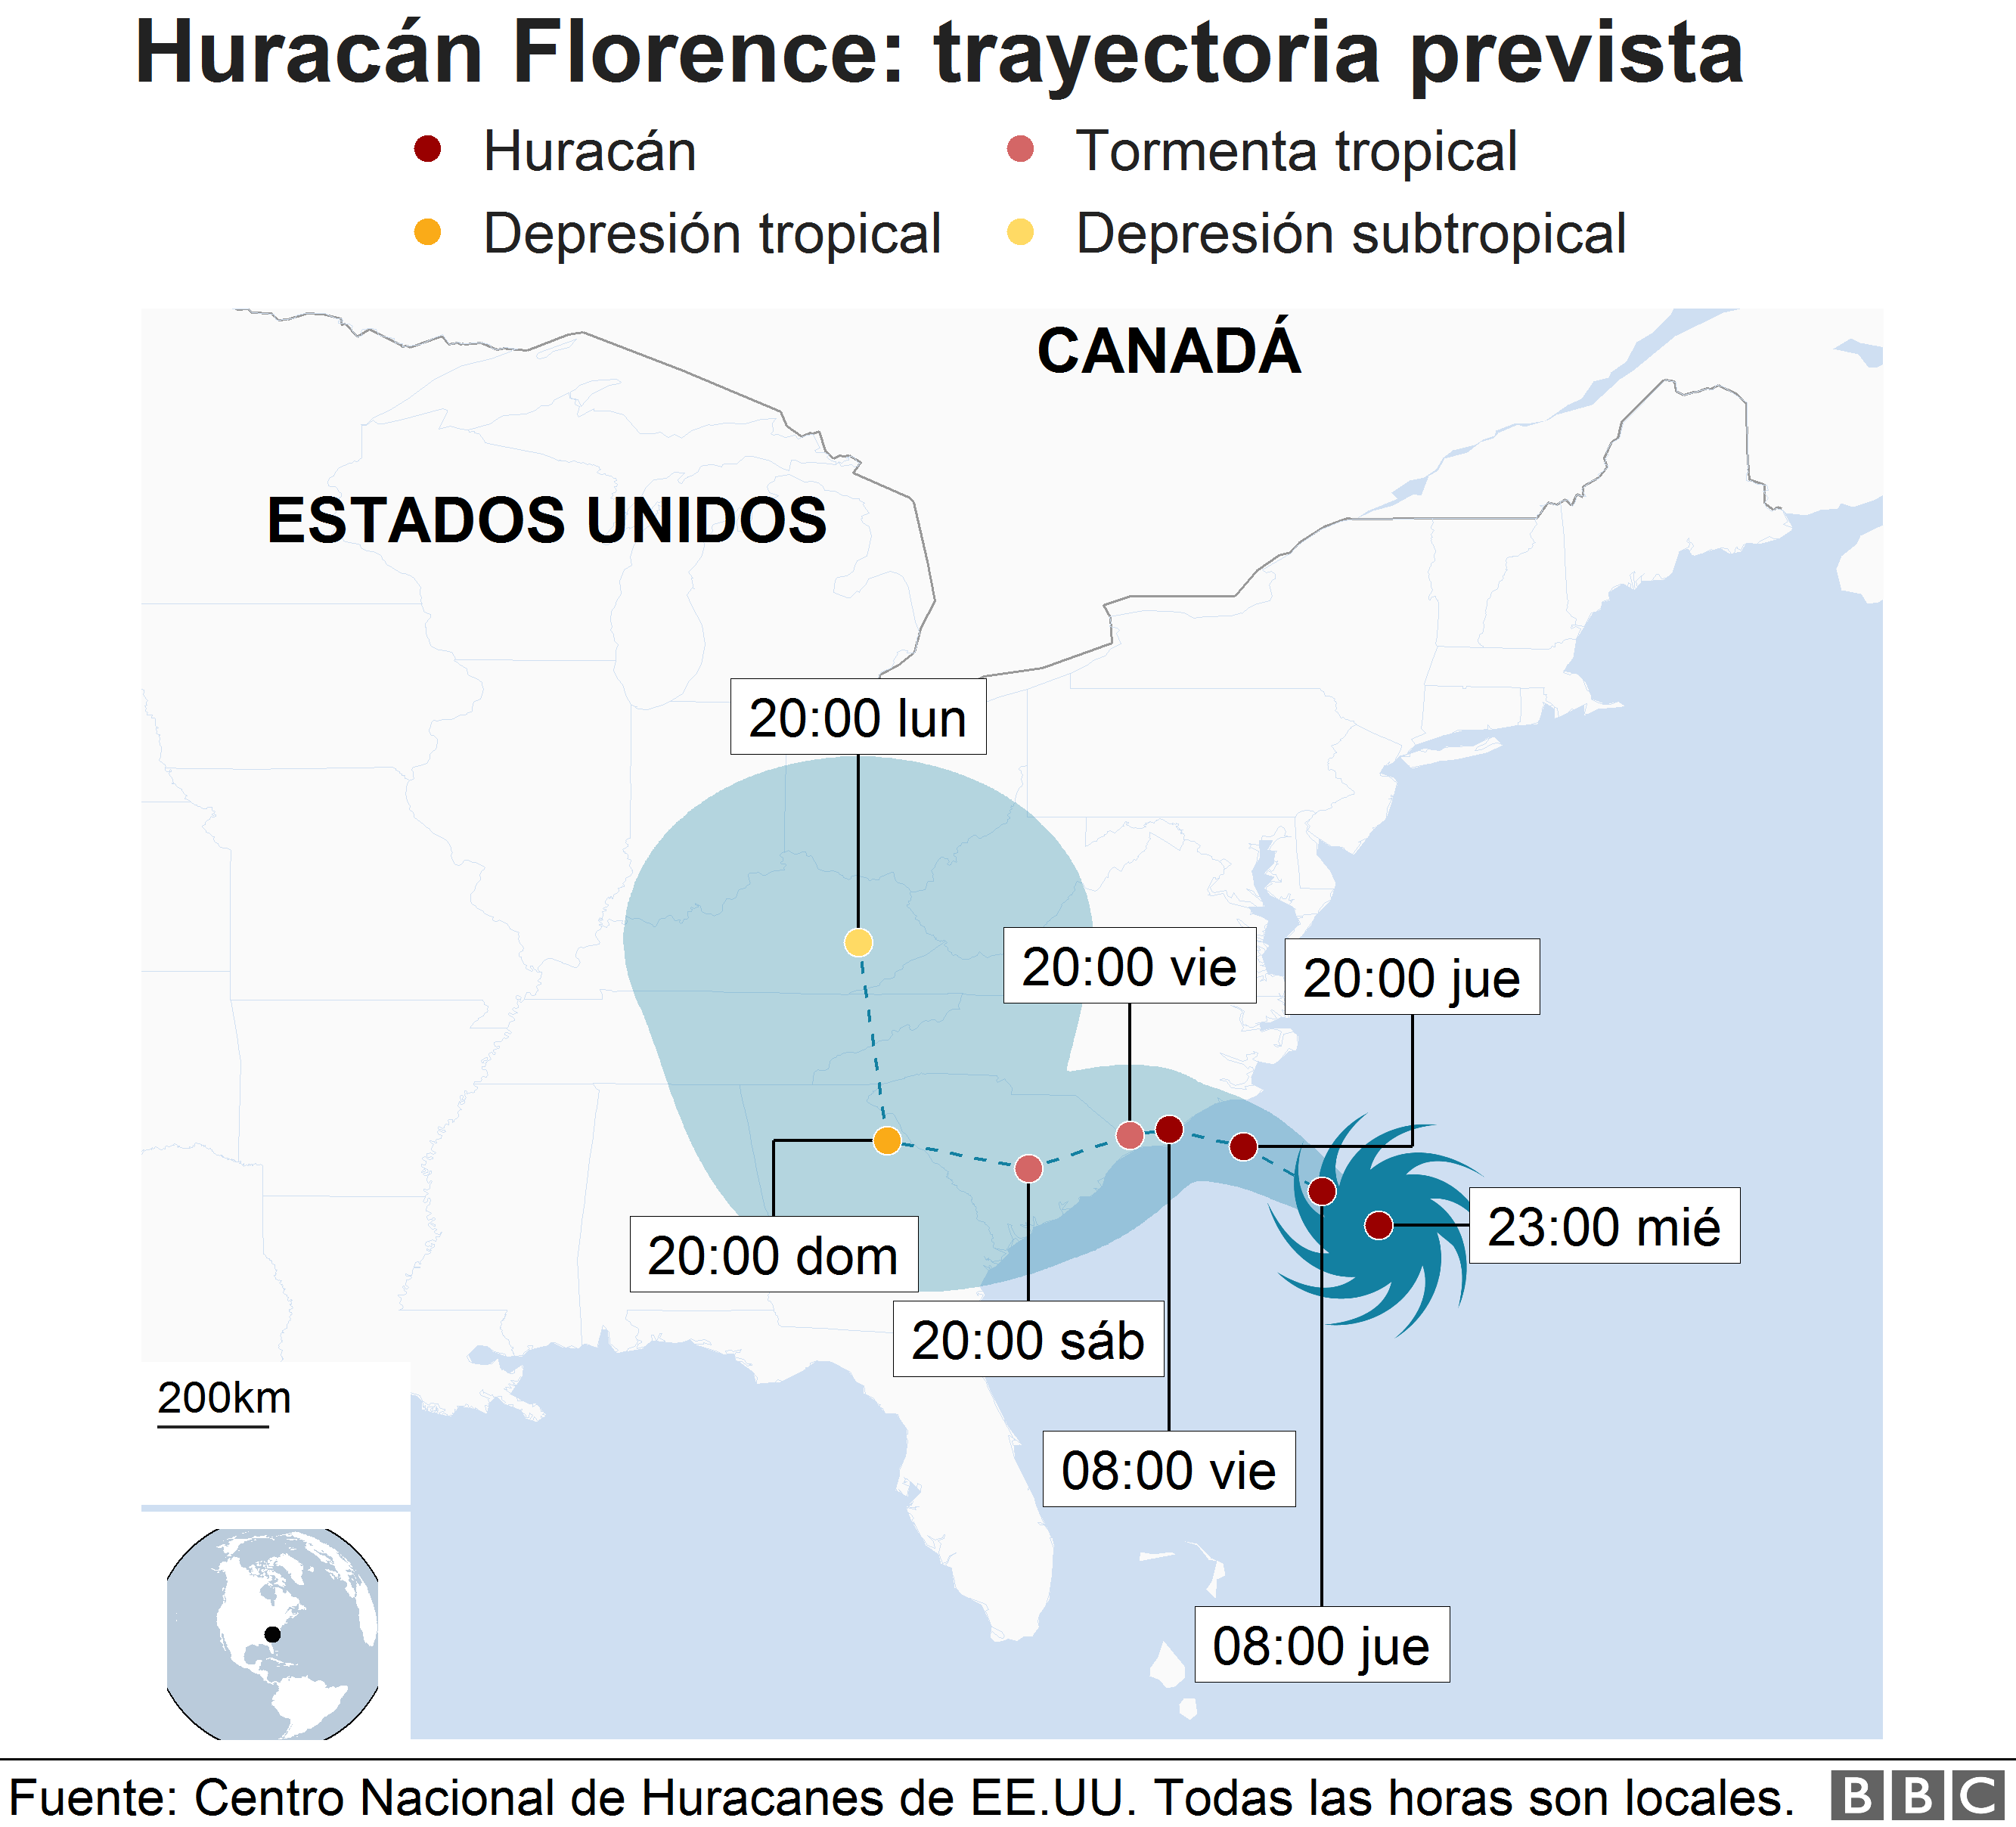 Ilustración de la trayectoria del huracán Florence